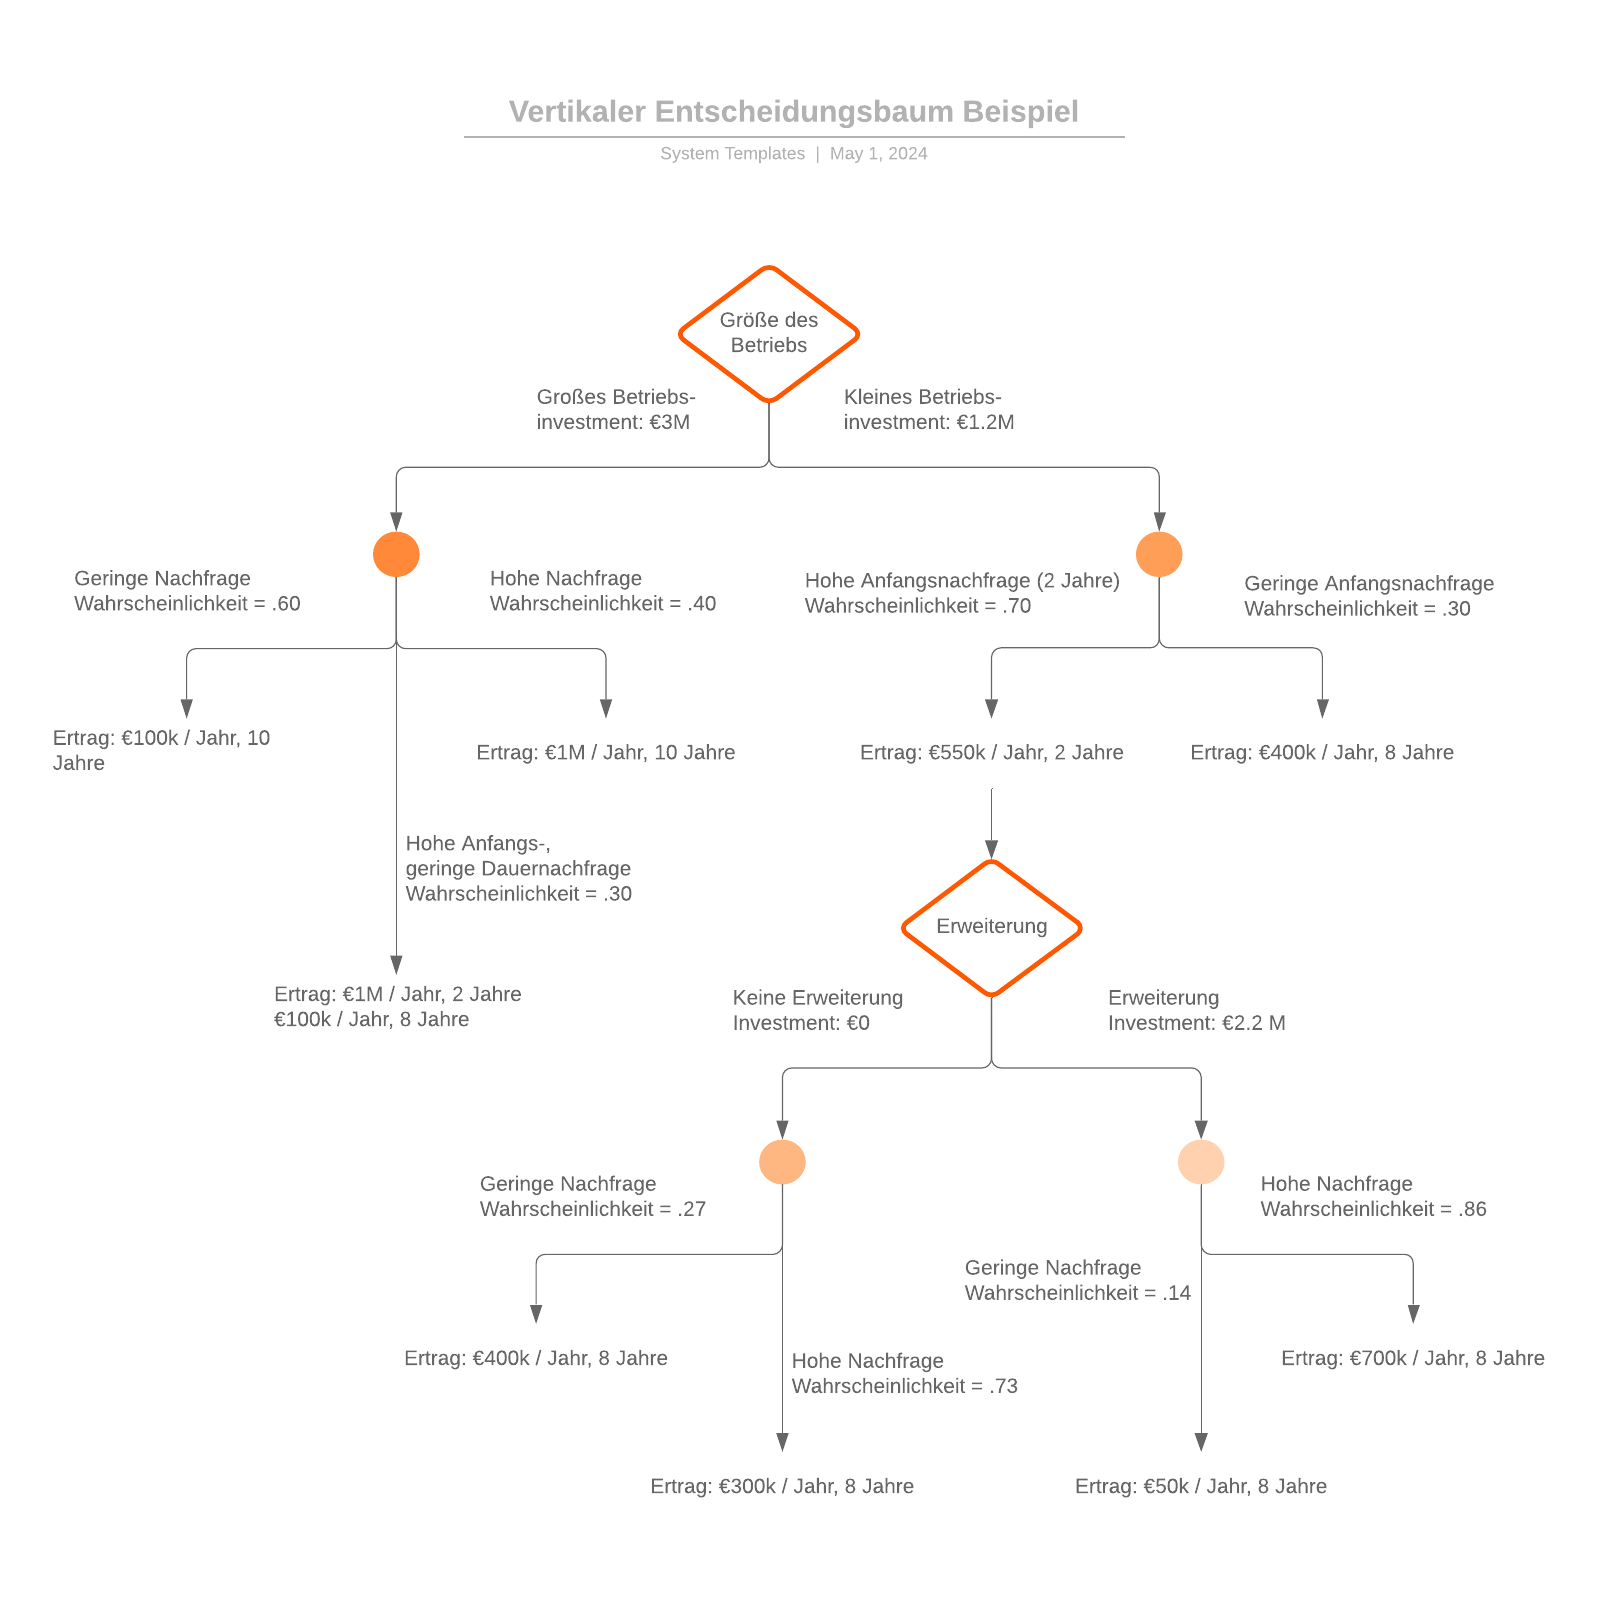 Vertikaler Entscheidungsbaum - Beispiel